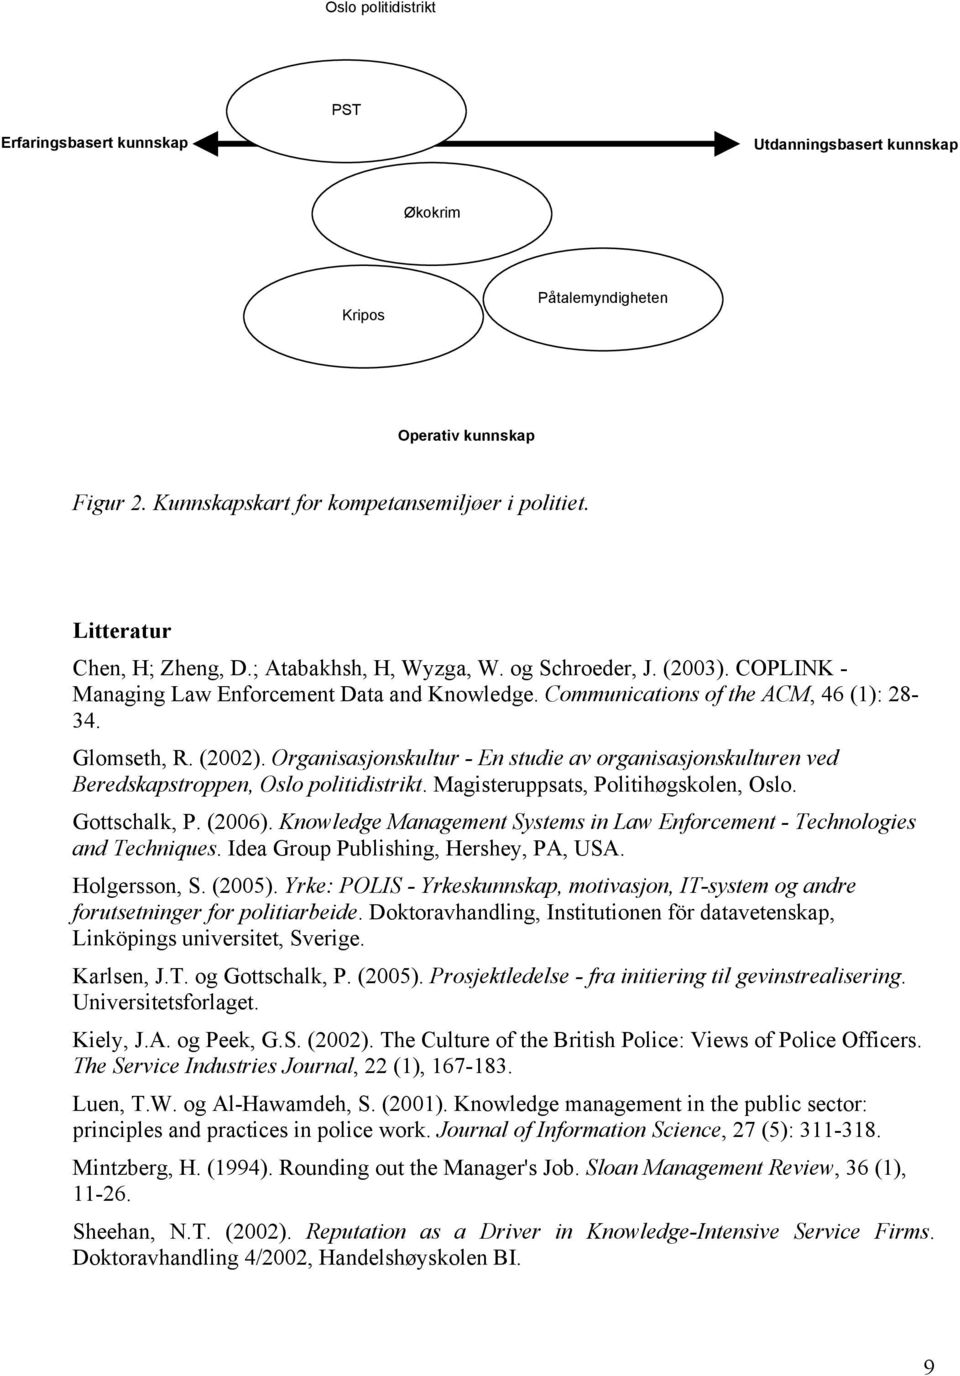 Organisasjonskultur - En studie av organisasjonskulturen ved Beredskapstroppen, Oslo politidistrikt. Magisteruppsats, Politihøgskolen, Oslo. Gottschalk, P. (2006).